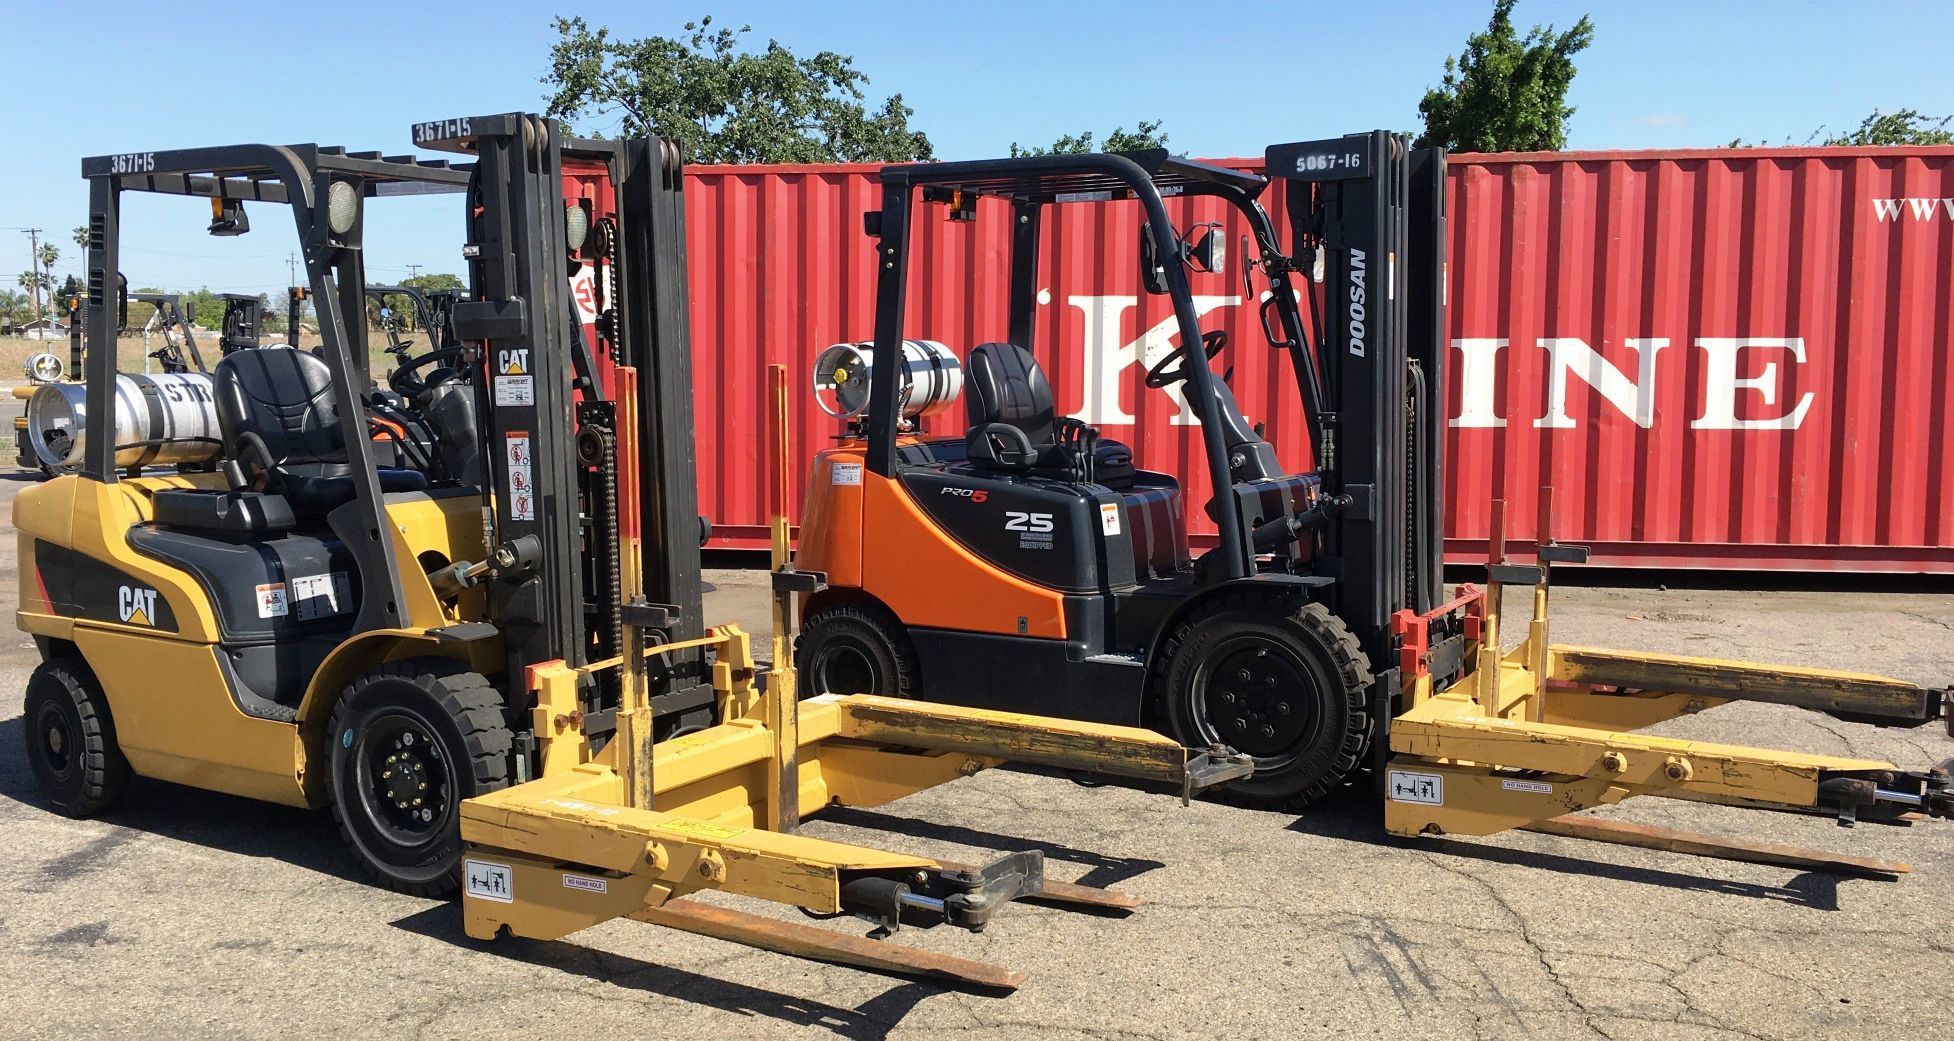 Summer Forklift Rentals 2019